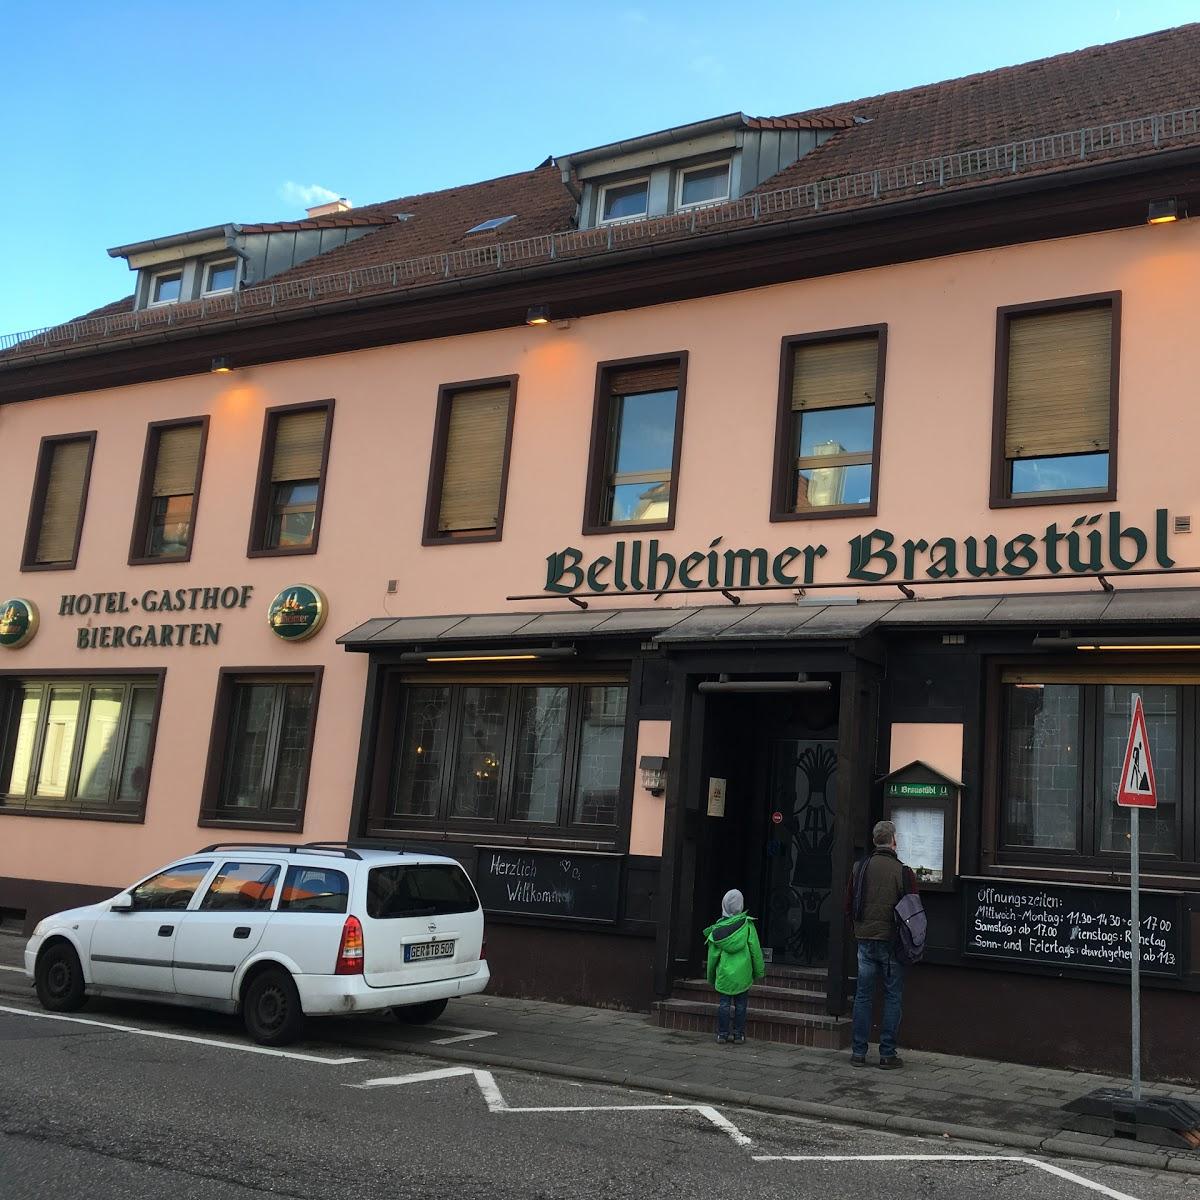 Restaurant "er Braustübl" in Bellheim